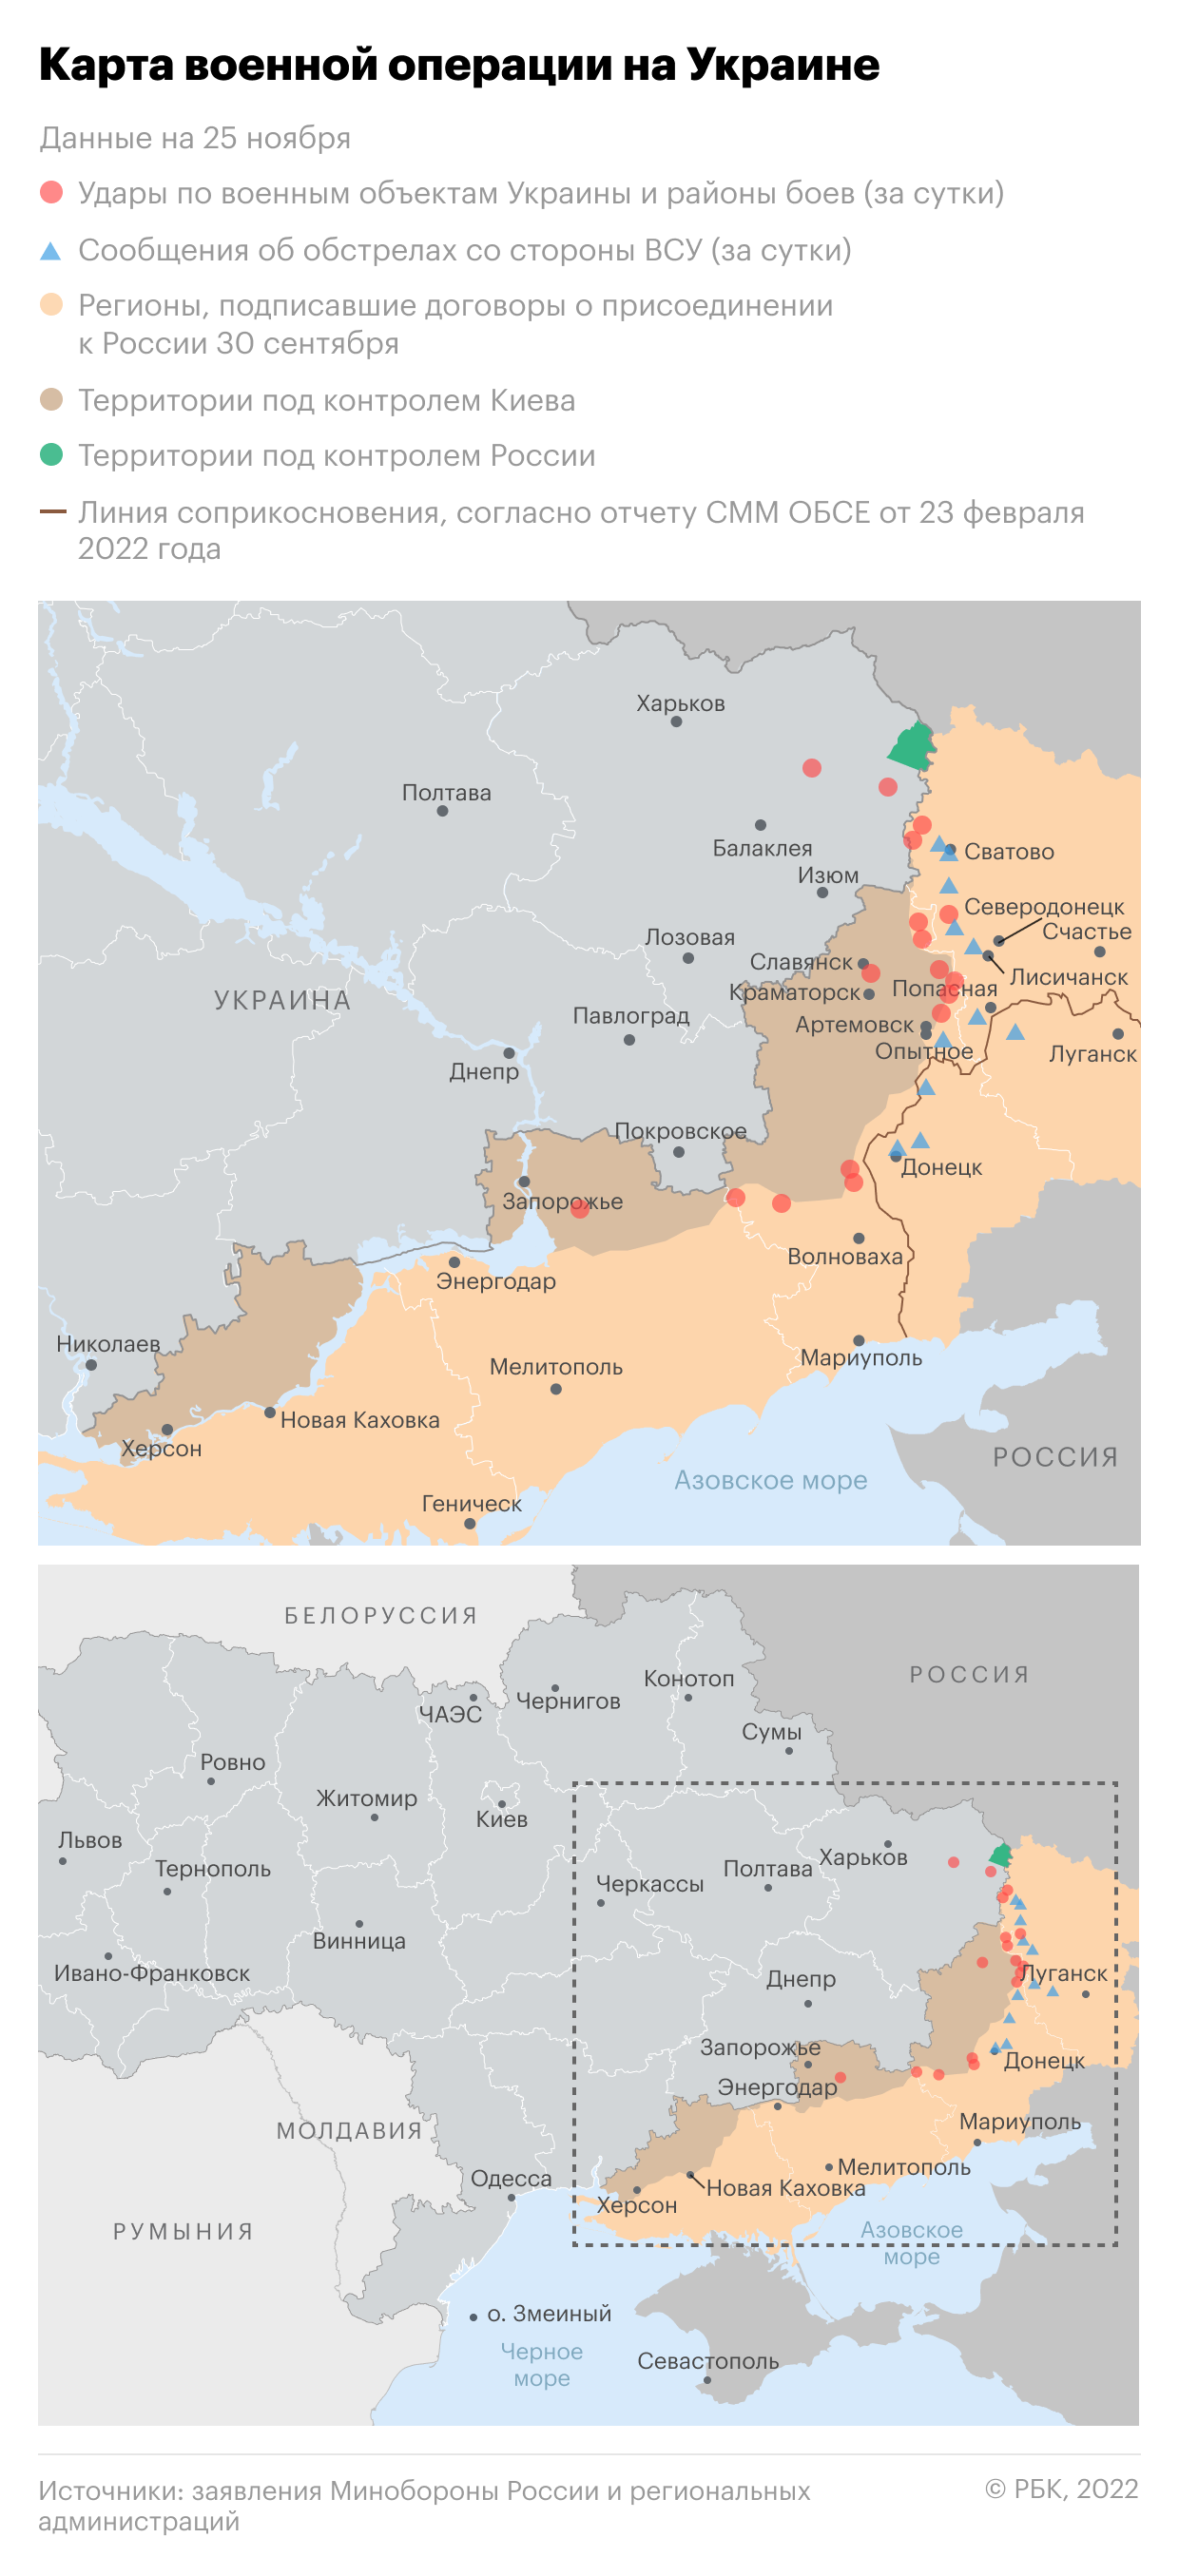 Под Киевом стали возводить фортификационные укрепления"/>













